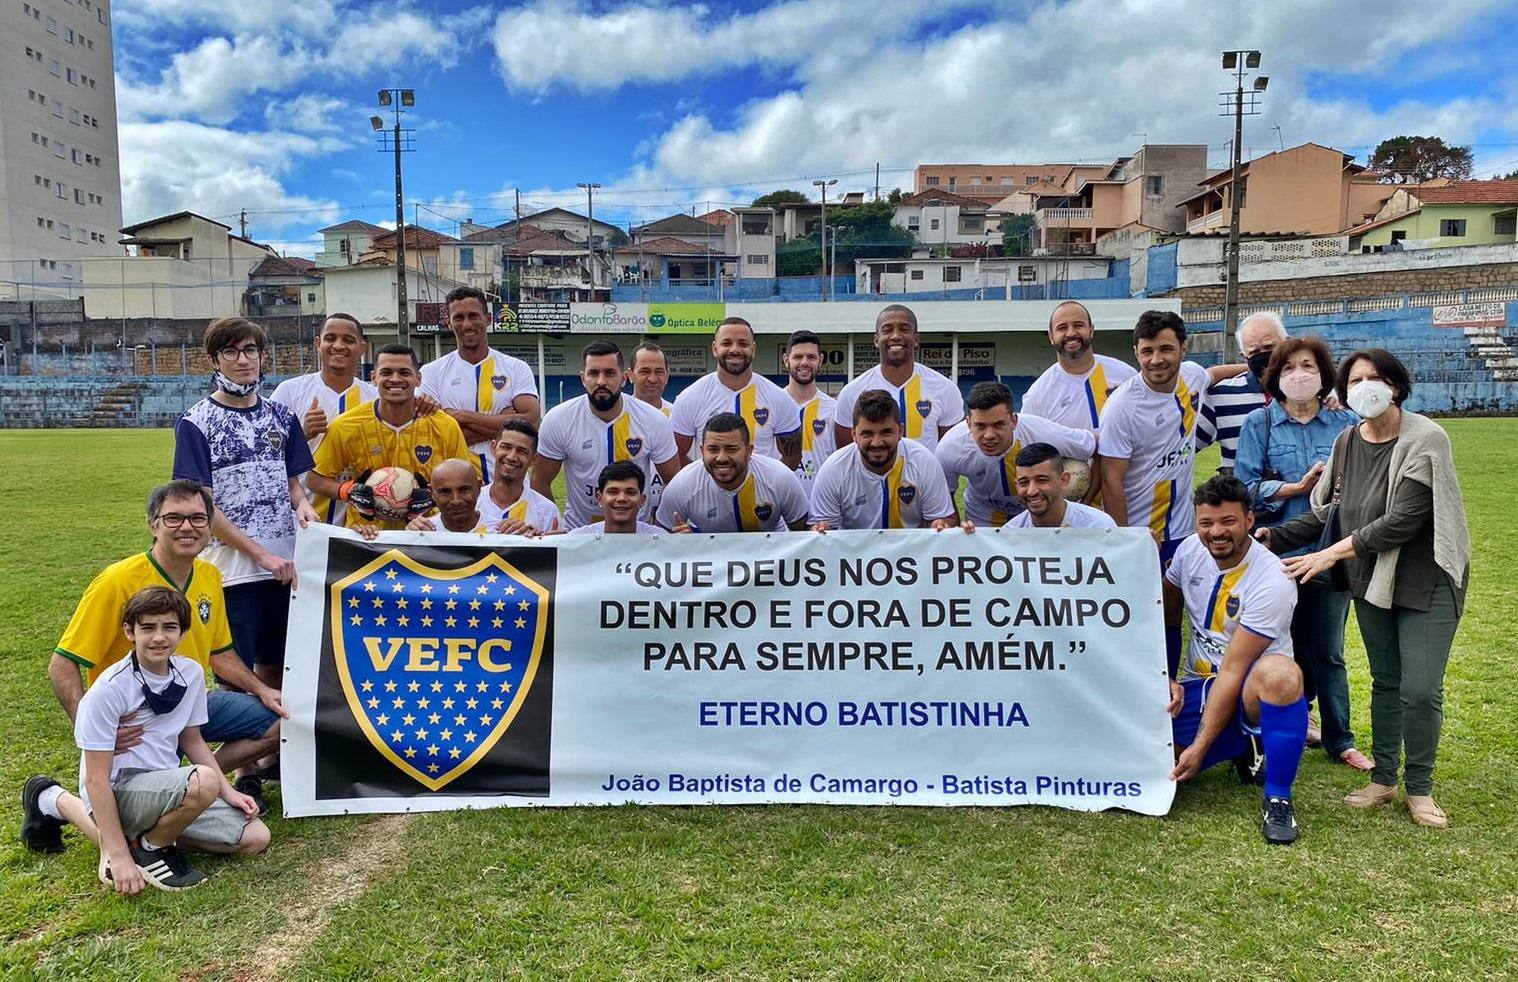 Válvula de Escape FC presta homenagem ao eterno Baptistinha